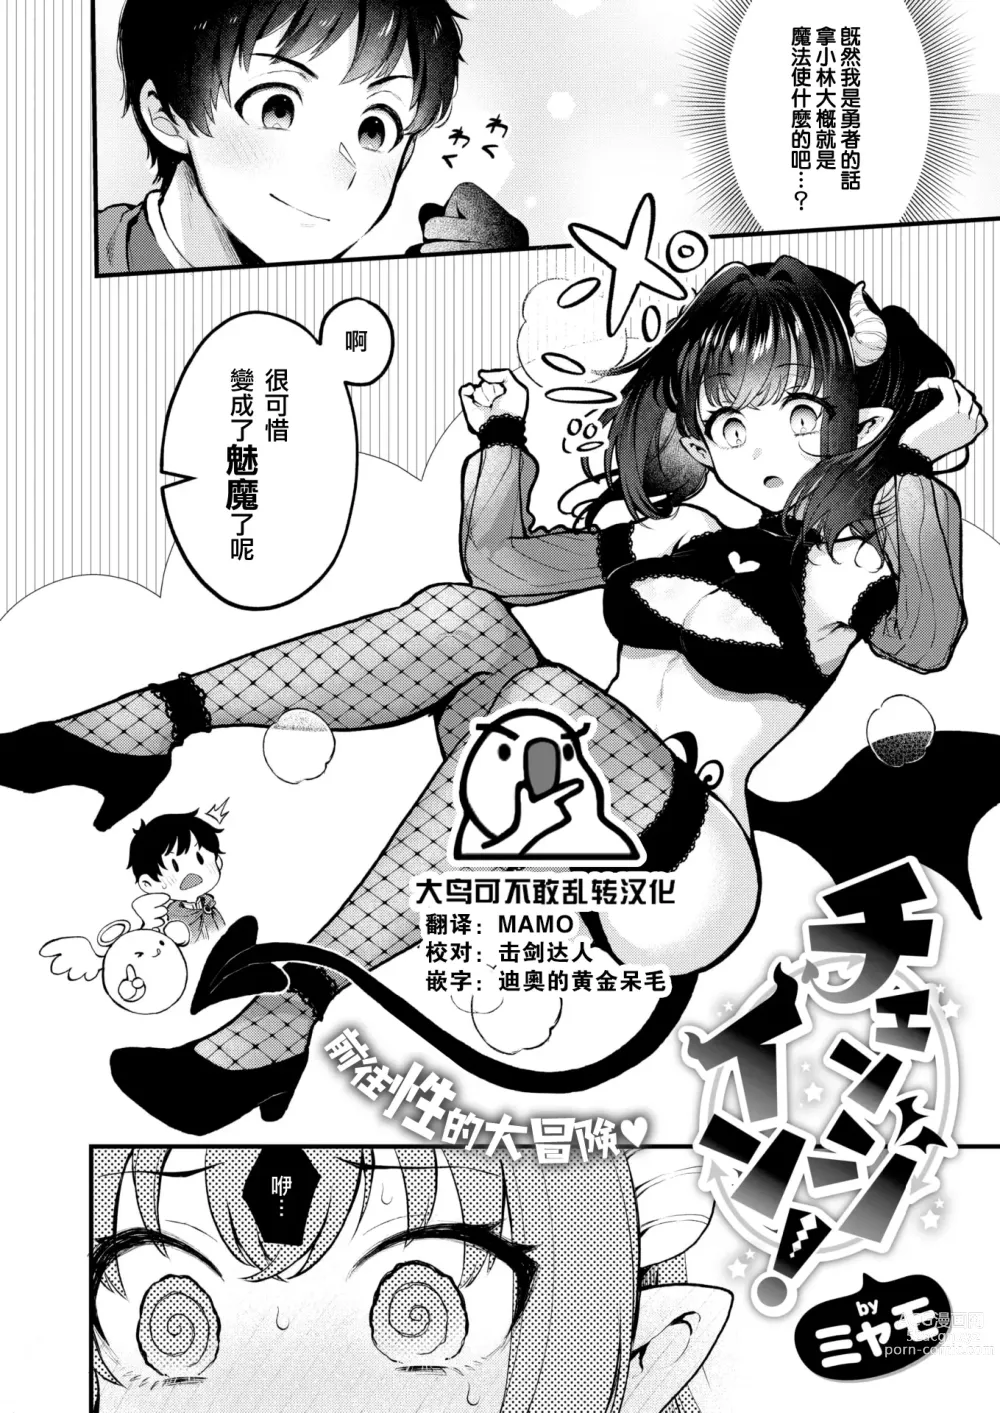 Page 1 of manga Changing!